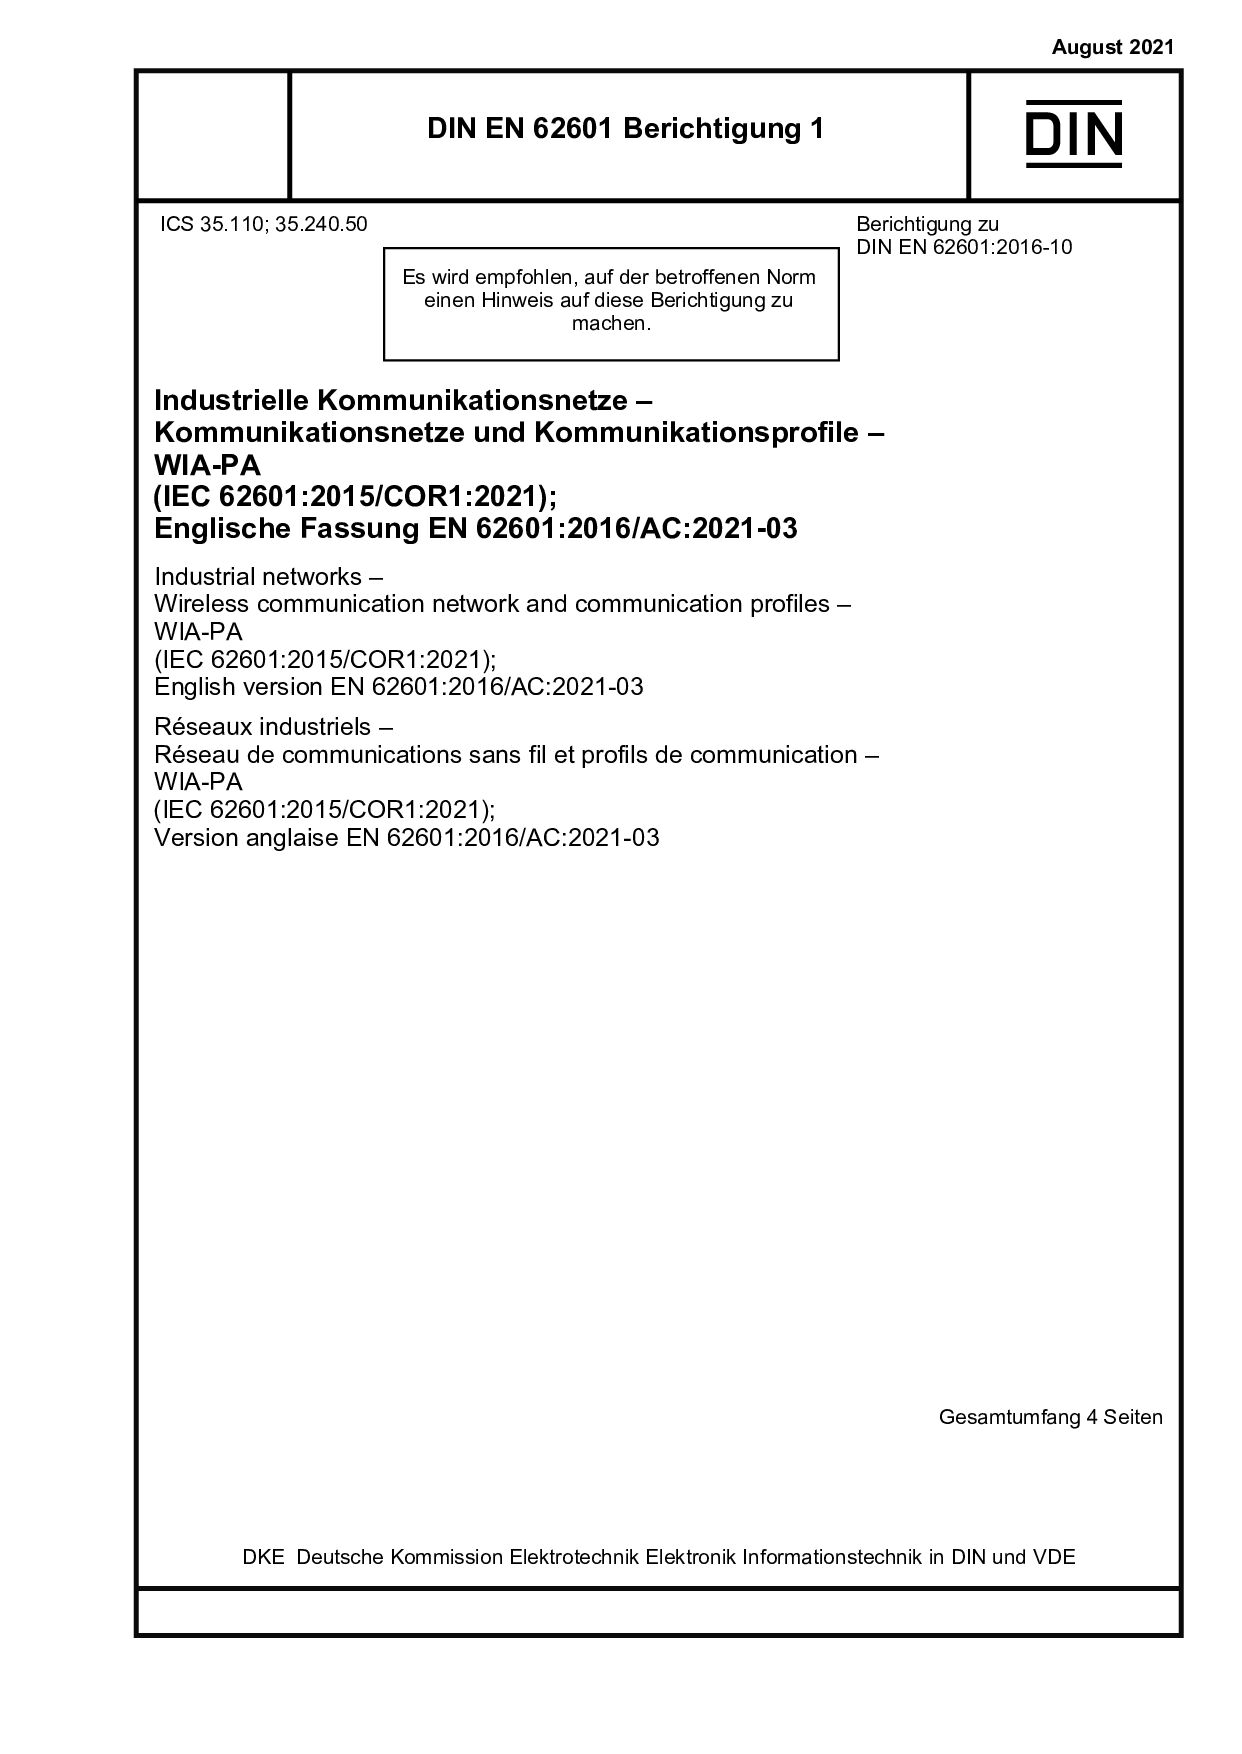 DIN EN 62601 Berichtigung 1:2021-08封面图